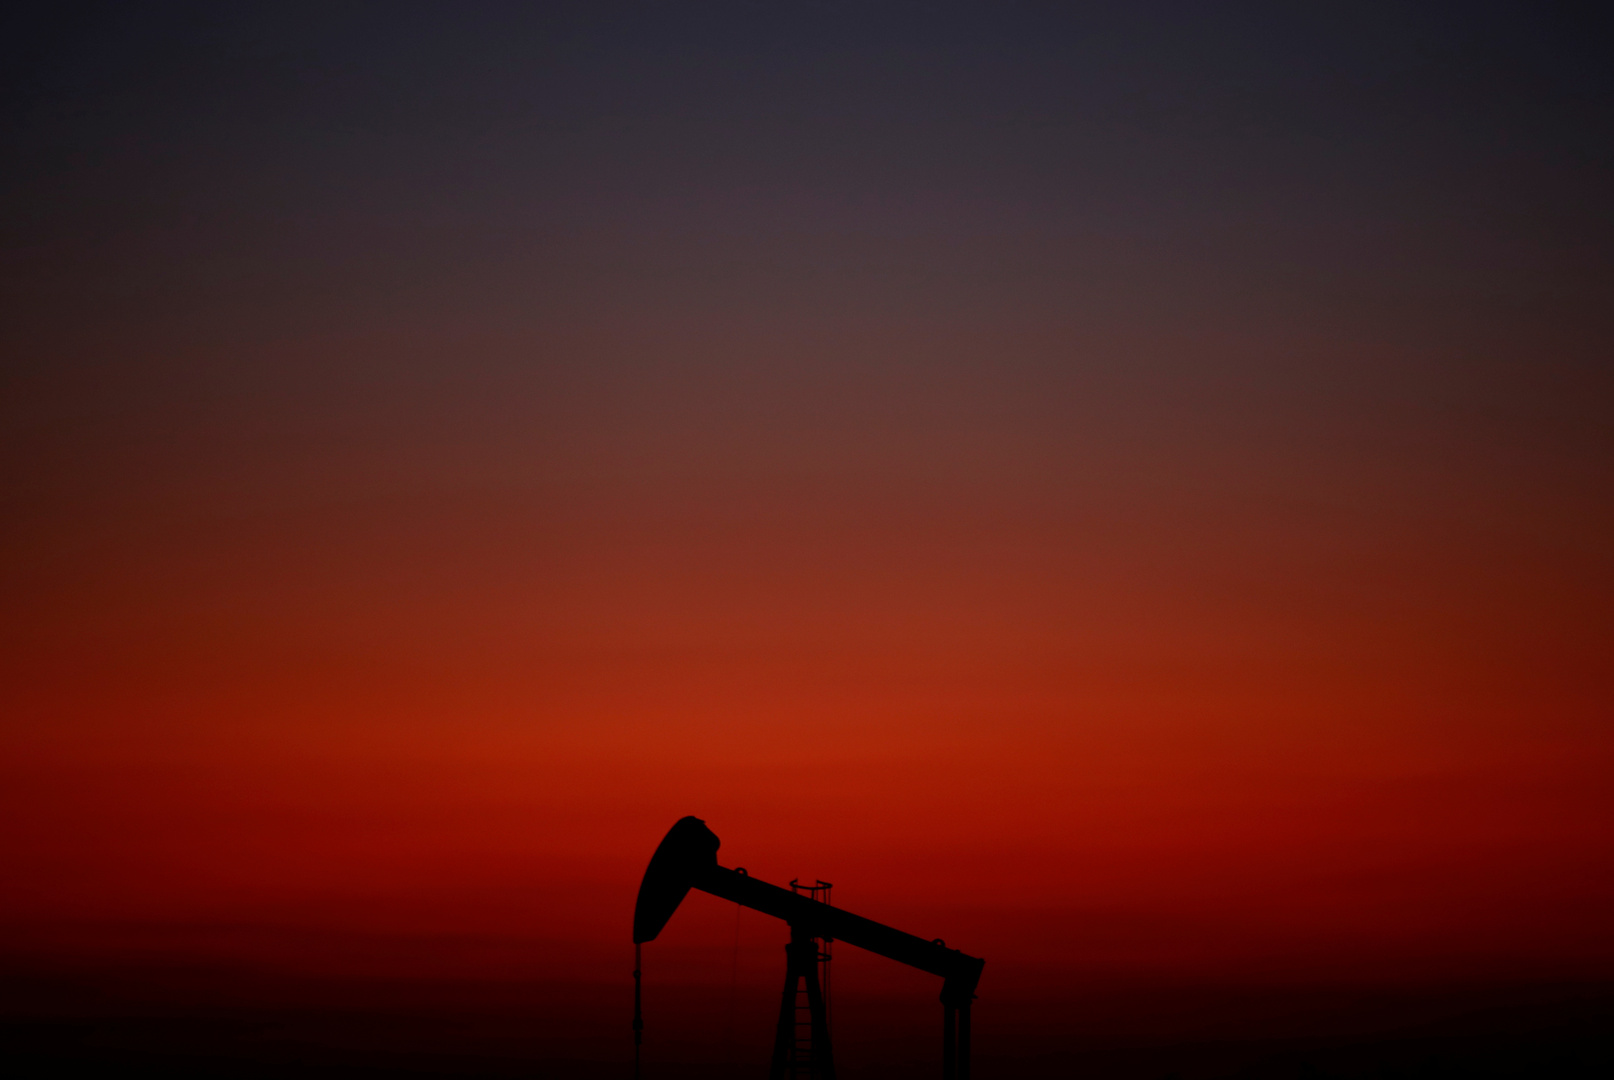 موسكو: من المتوقع أن يعاود الطلب على النفط في العالم الارتفاع قريبا